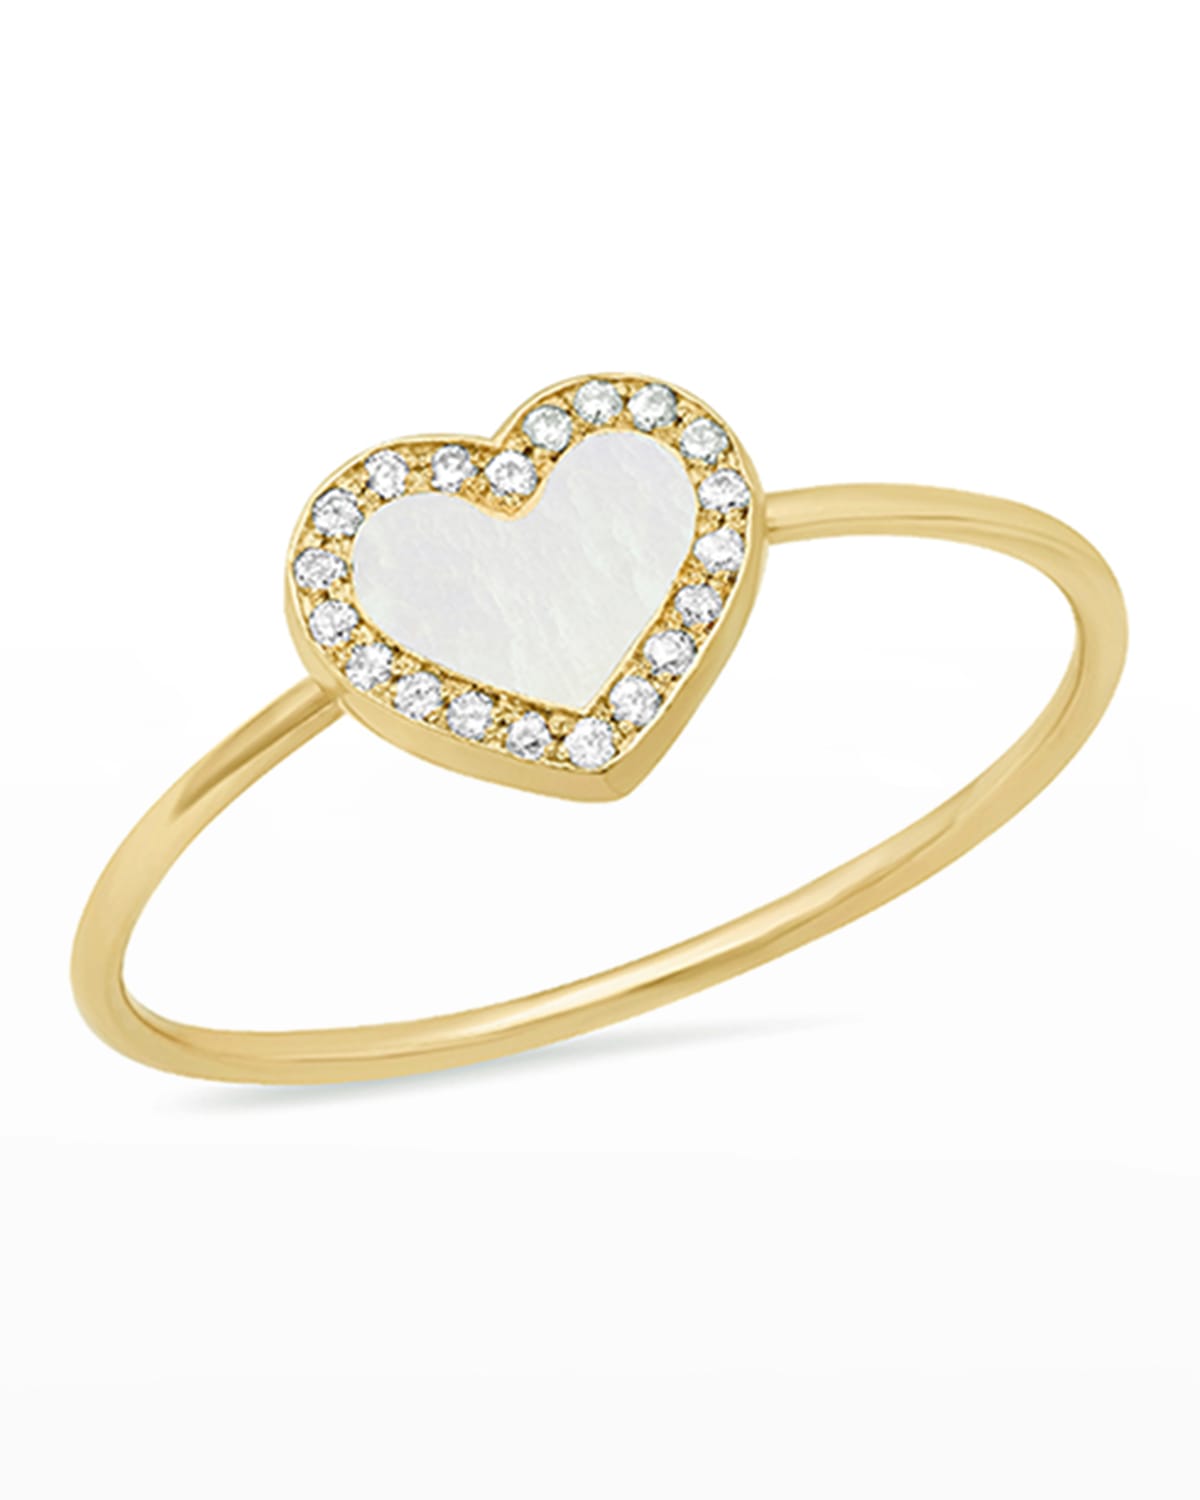 Jennifer Meyer 18k Gold Diamond Heart Ring, Size 6.5